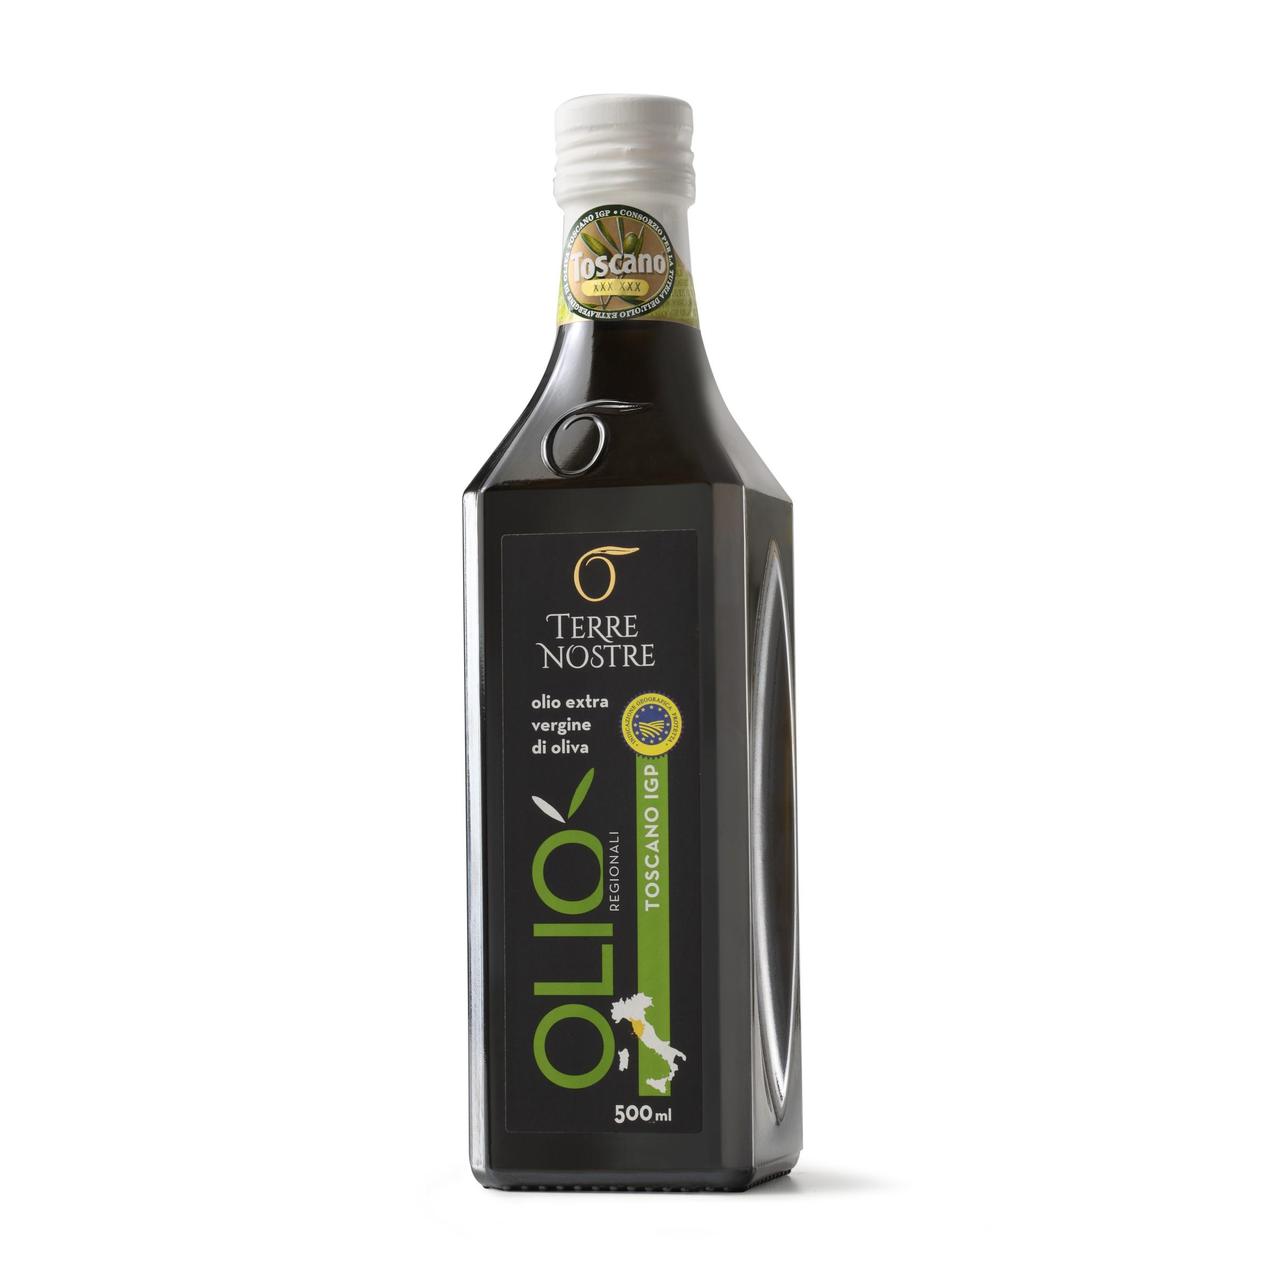 Terre Nostre Tuscan PGI Extra Virgin Olive Oil